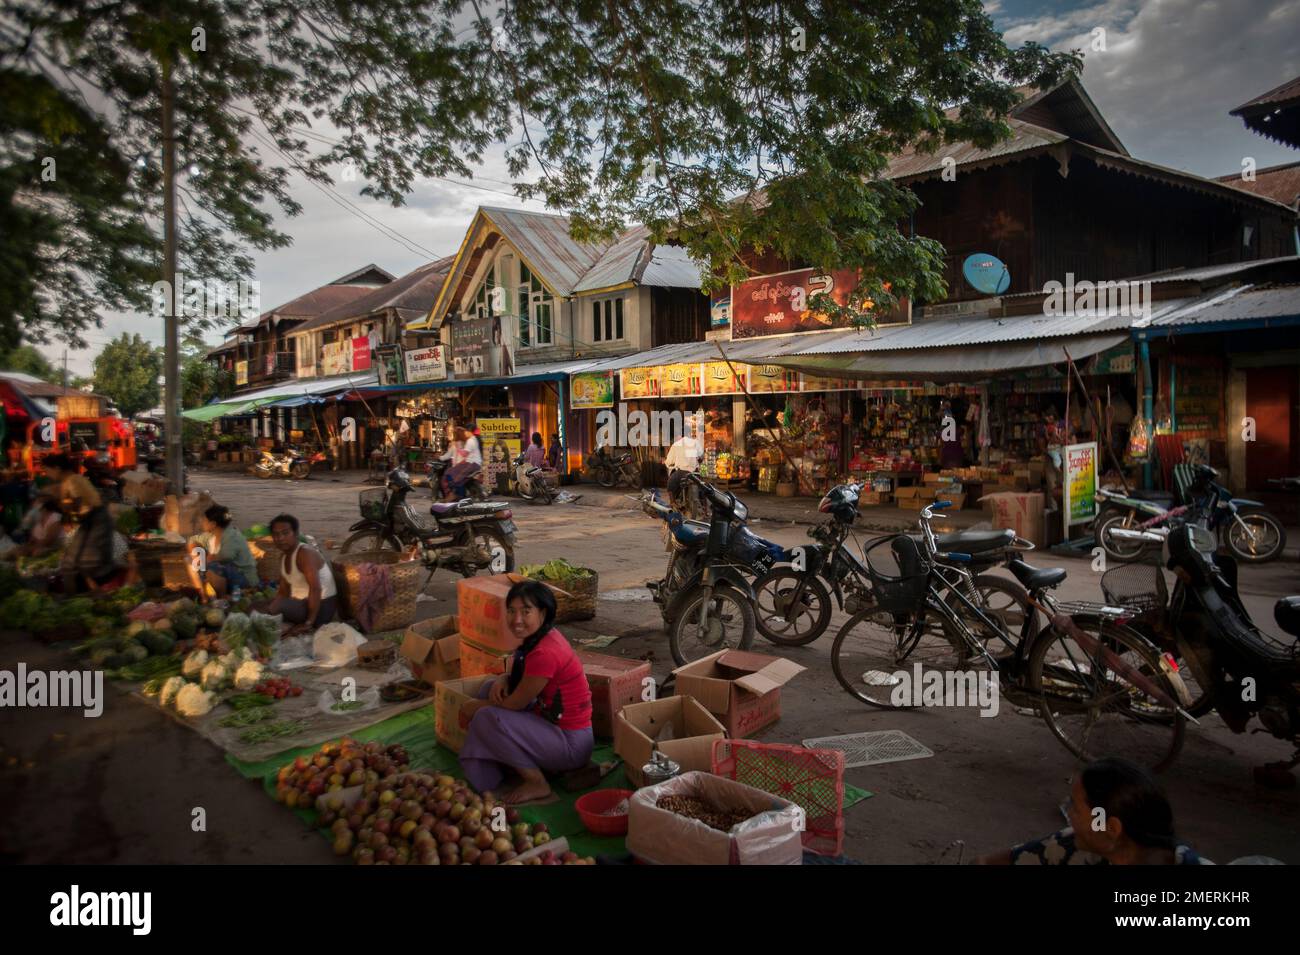 Myanmar, Northern Myanmar, Bhamo, riverside market with teak houses Stock Photo